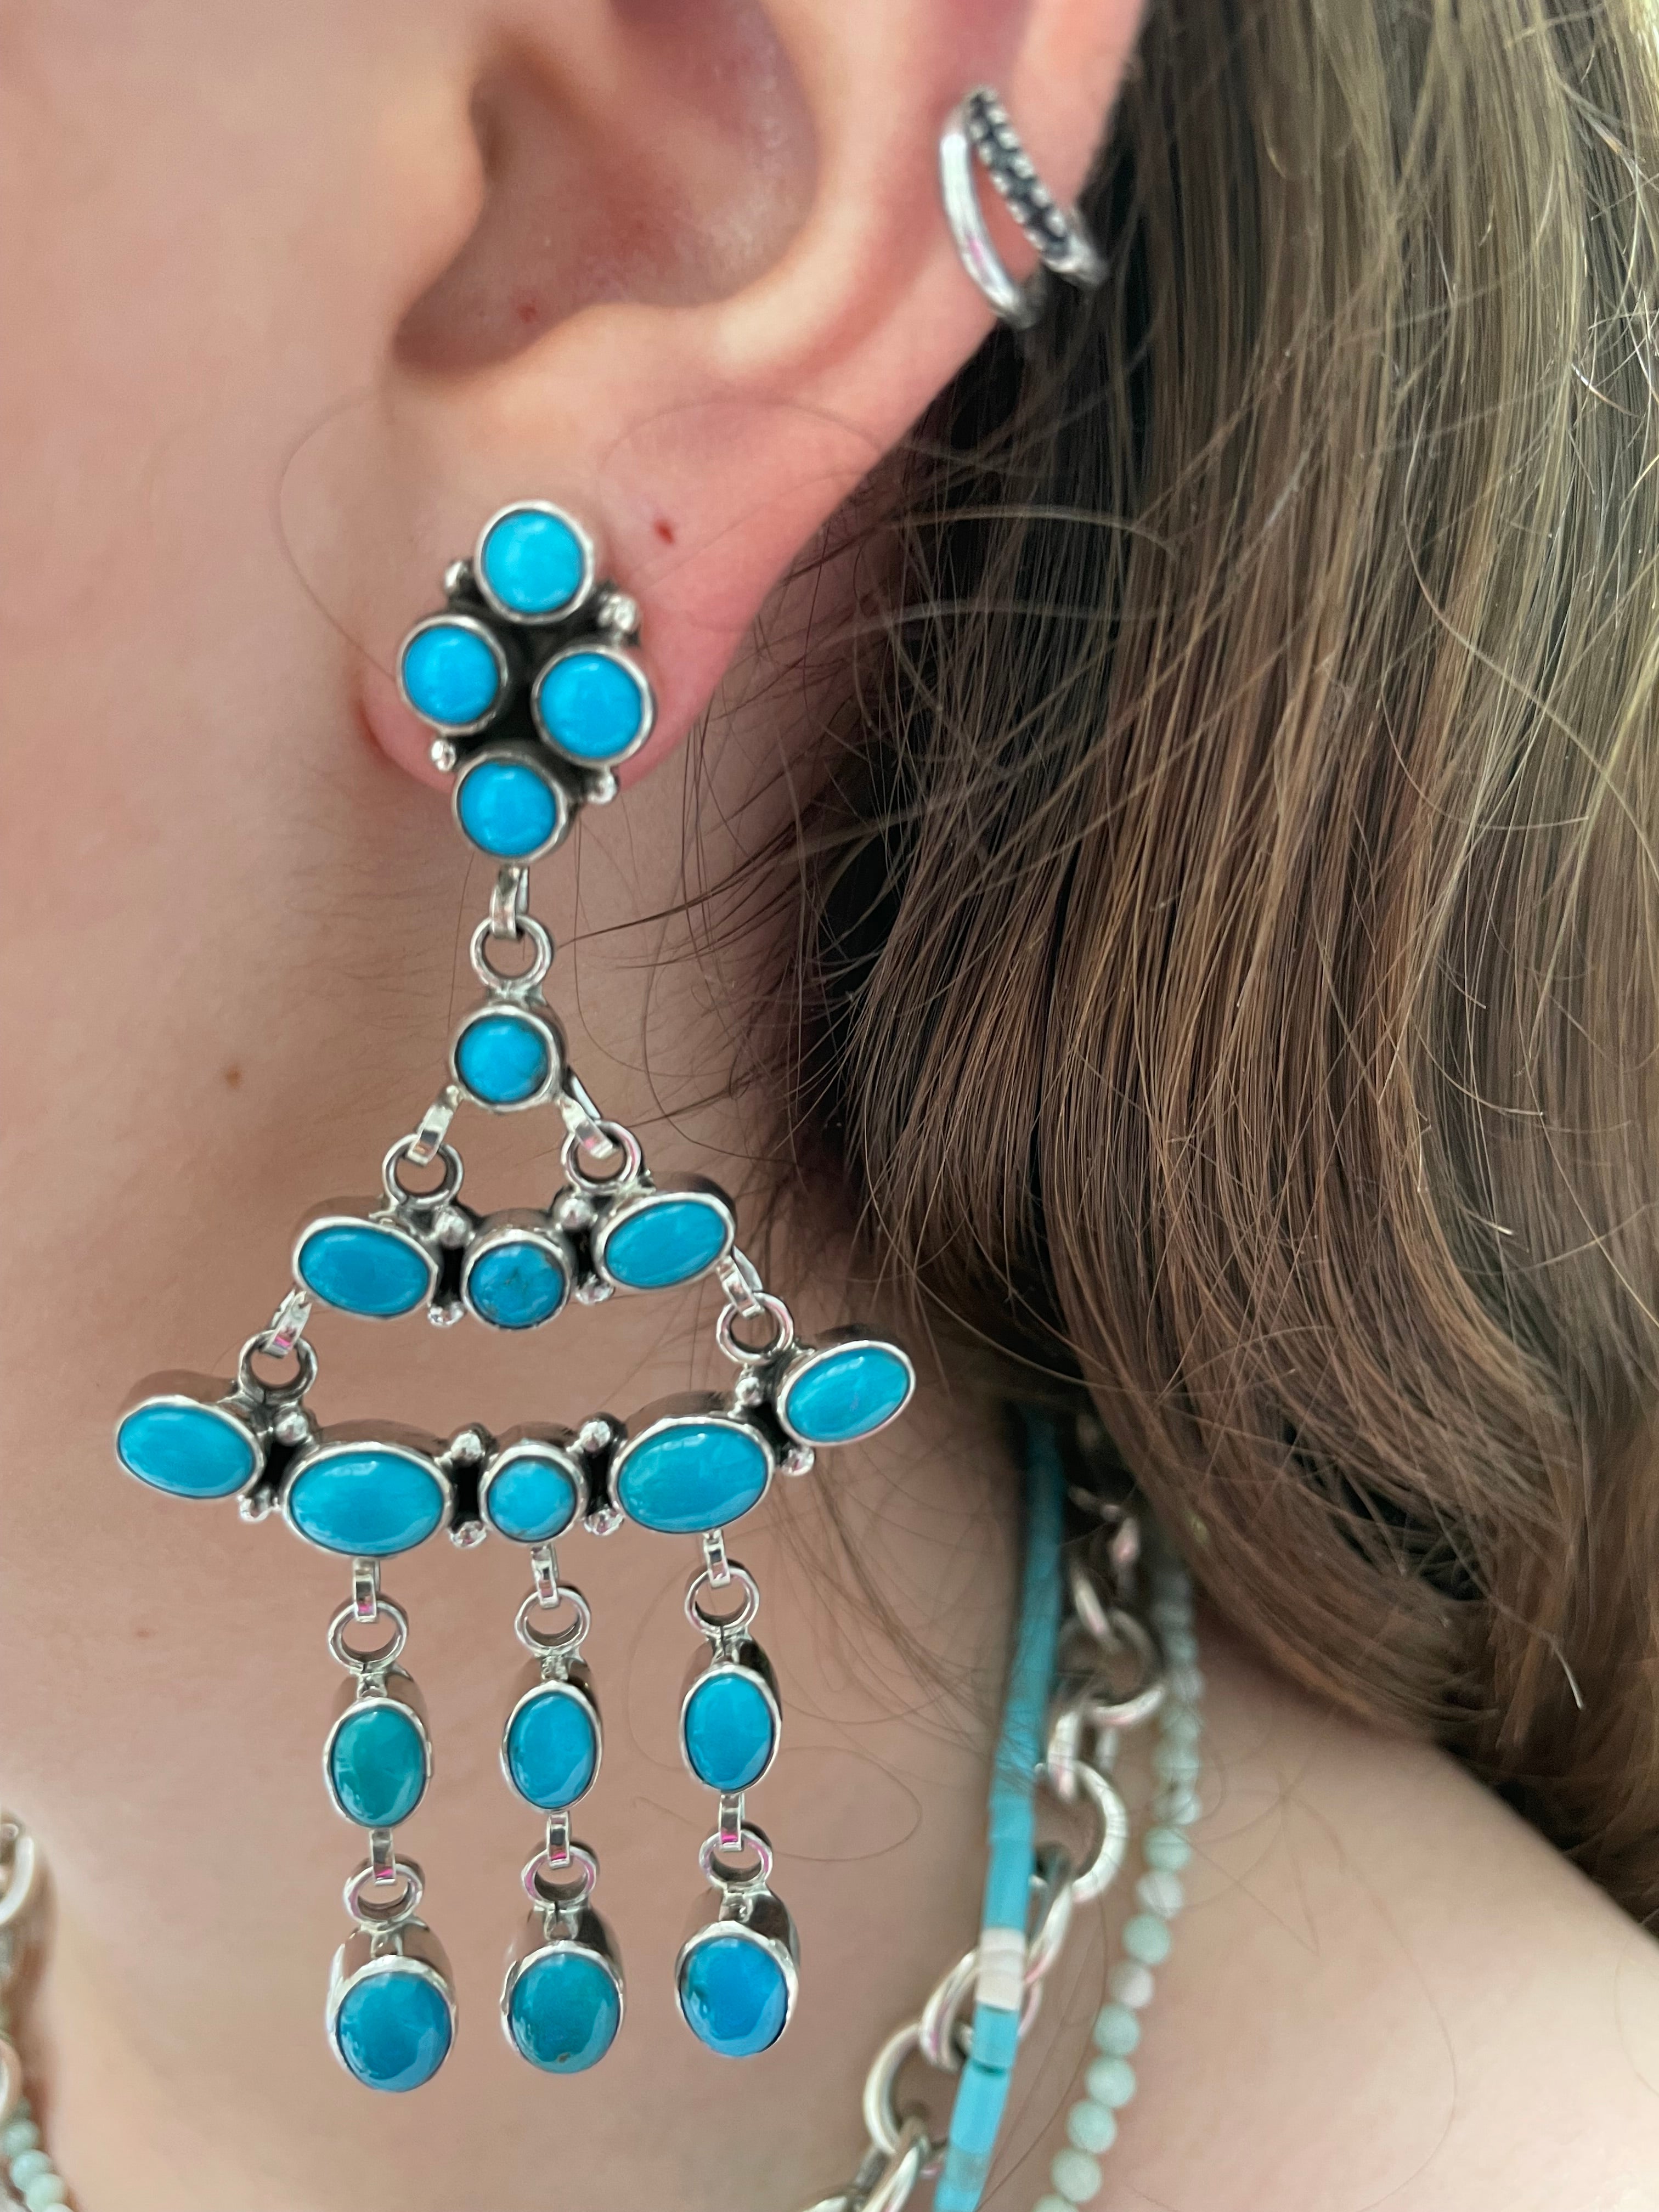 Stunning sleeping beauty turquoise earrings